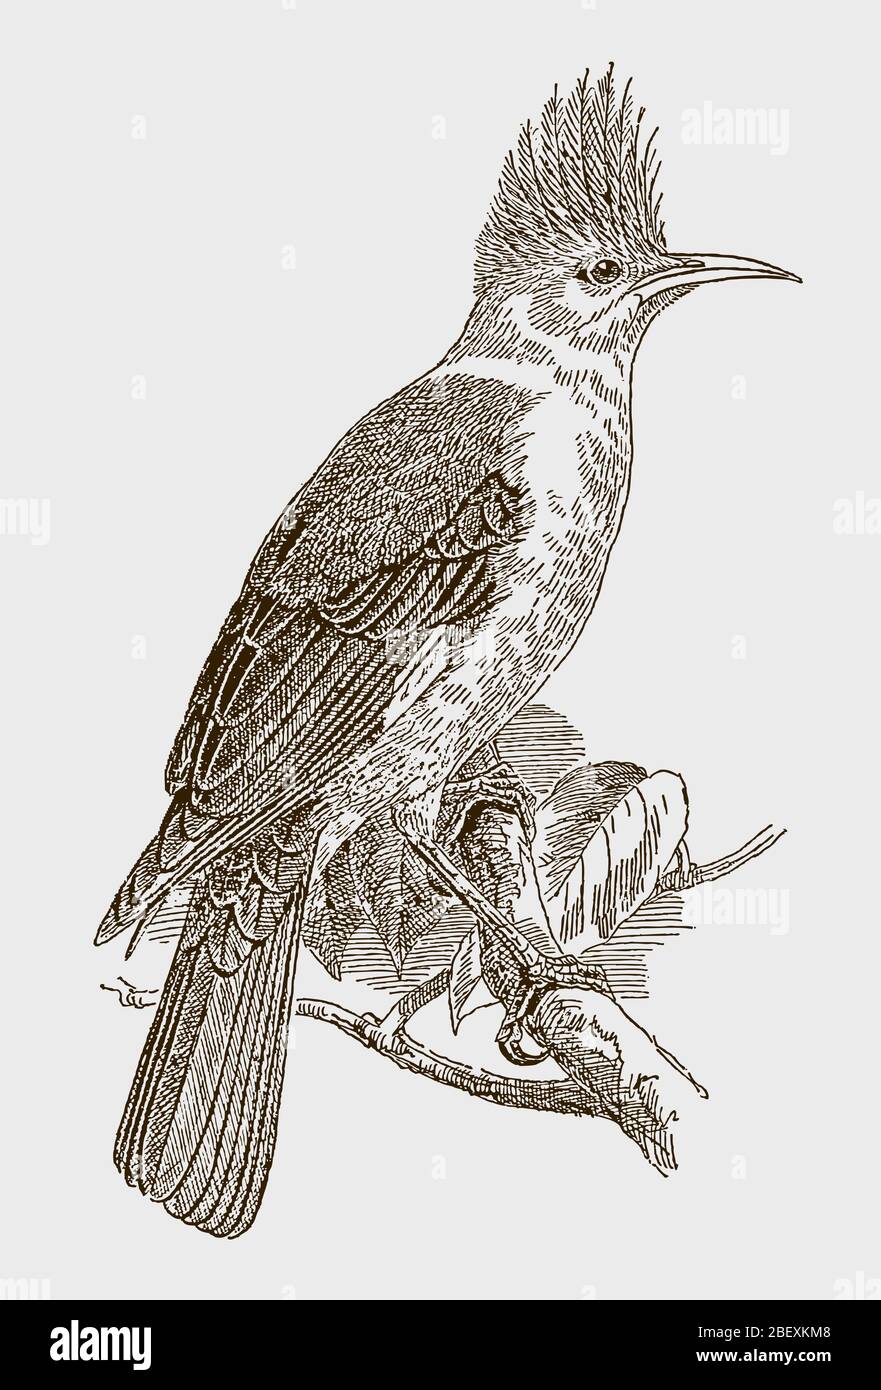 Wiedehaaren, fregilupus varius, ein ausgestorbener Vogel von den mascarene-Inseln im indischen Ozean. Abbildung nach einem Stich aus dem 19. Jahrhundert Stock Vektor